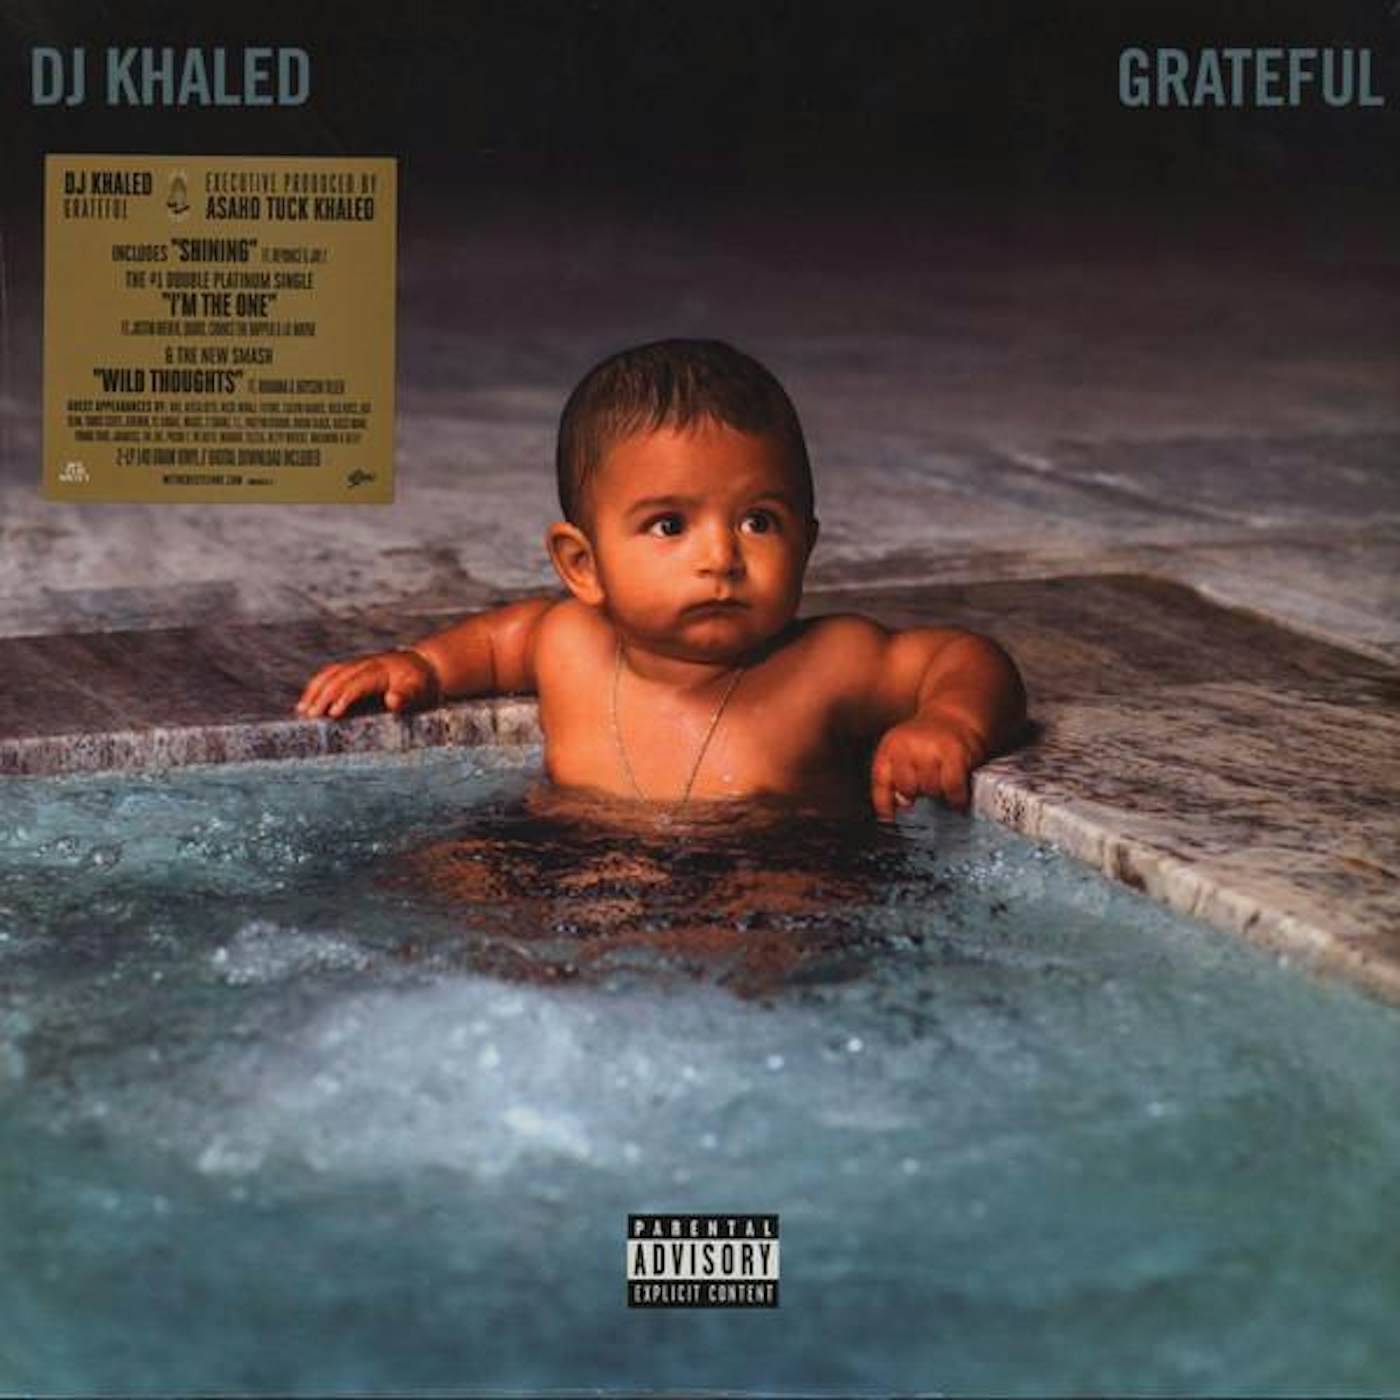 DJ Khaled GRATEFUL Vinyl Record